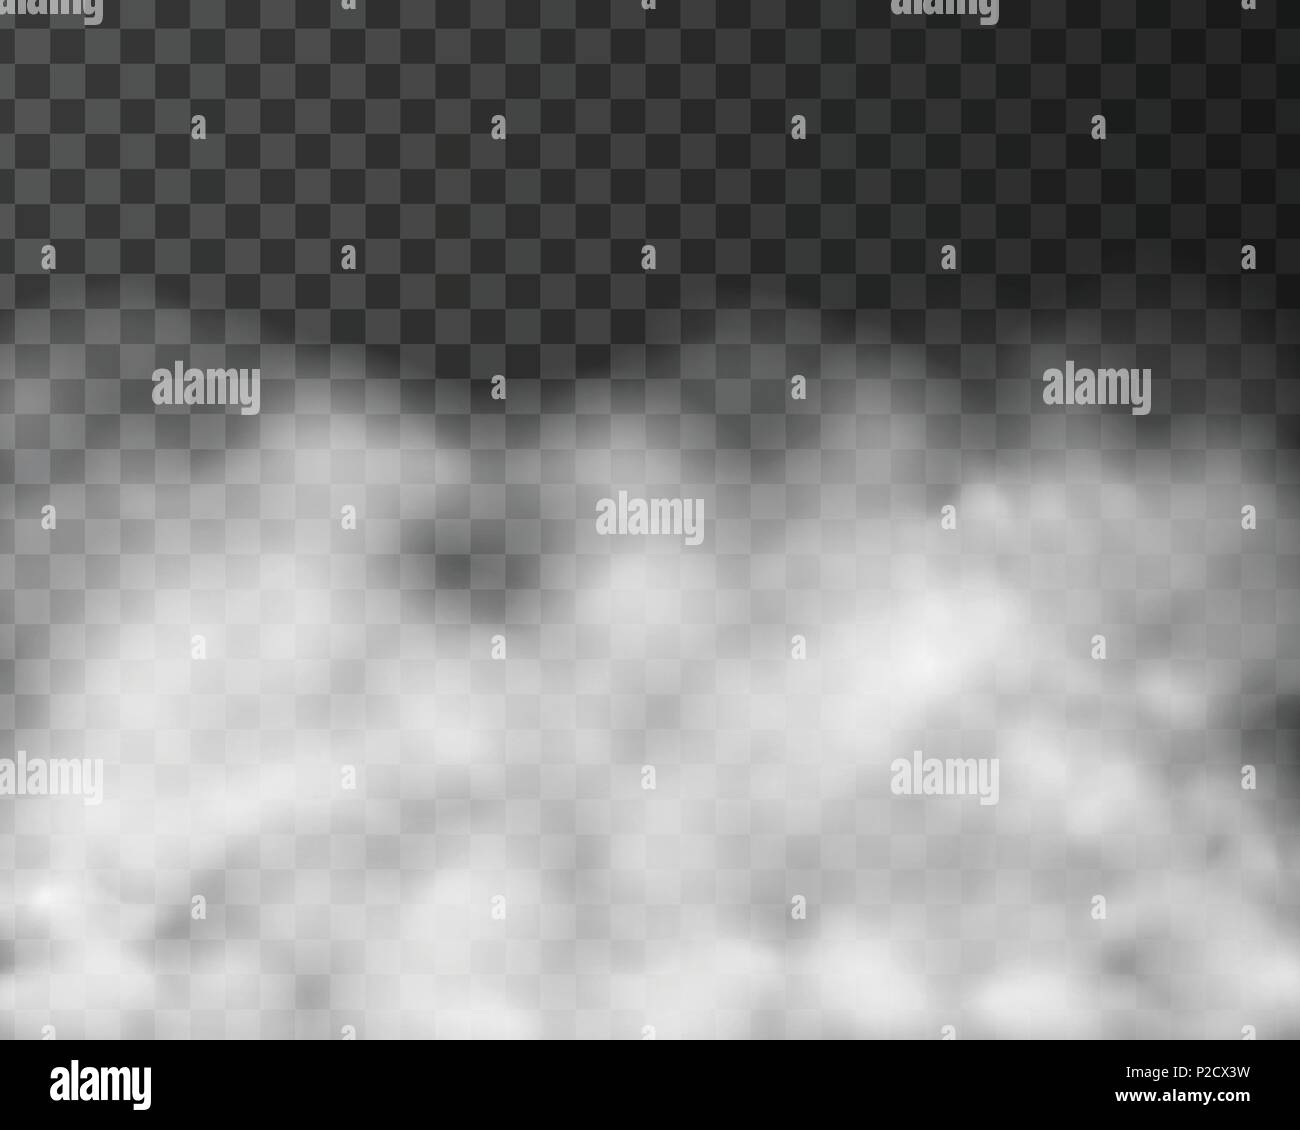 Ilustración realista de humo o nubes, aislado sobre fondo transparente - vector Ilustración del Vector